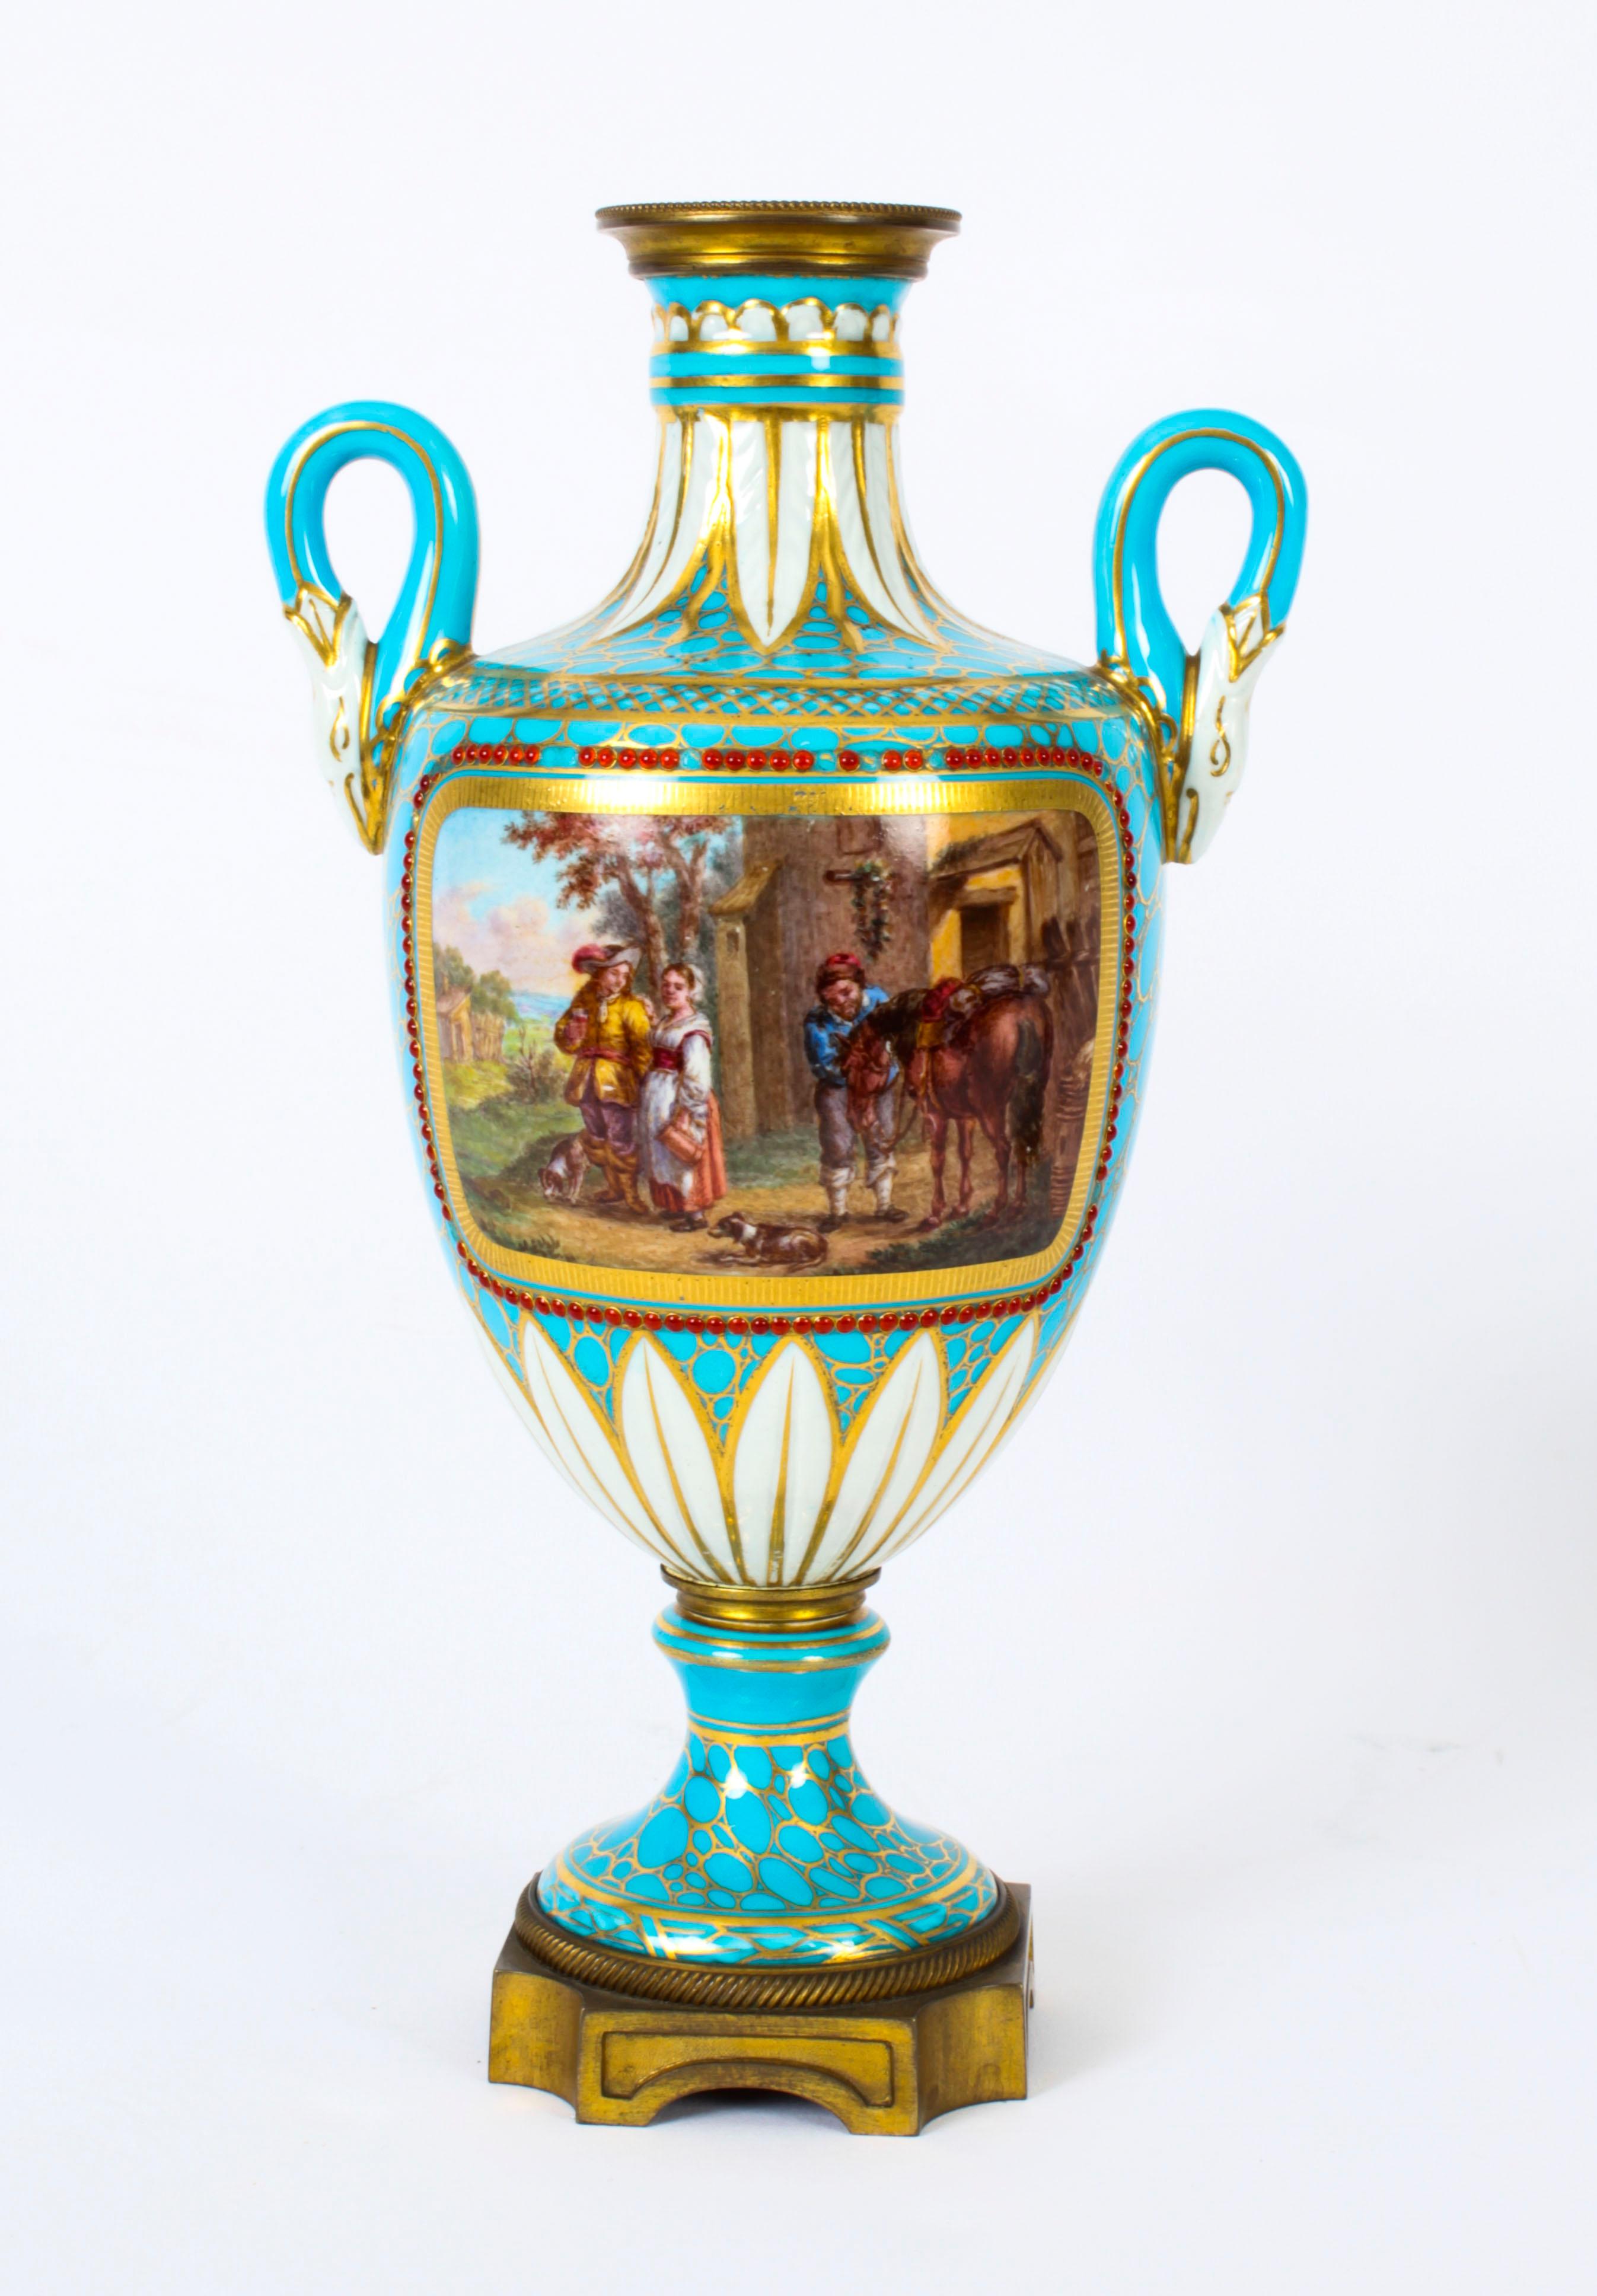 Il s'agit d'une paire d'urnes à deux anses en porcelaine française montée en bronze doré, de style Sèvres, datant des environs de 1860.
 
Les vases décoratifs à deux anses sont superbement décorés de panneaux peints à la main de haute qualité